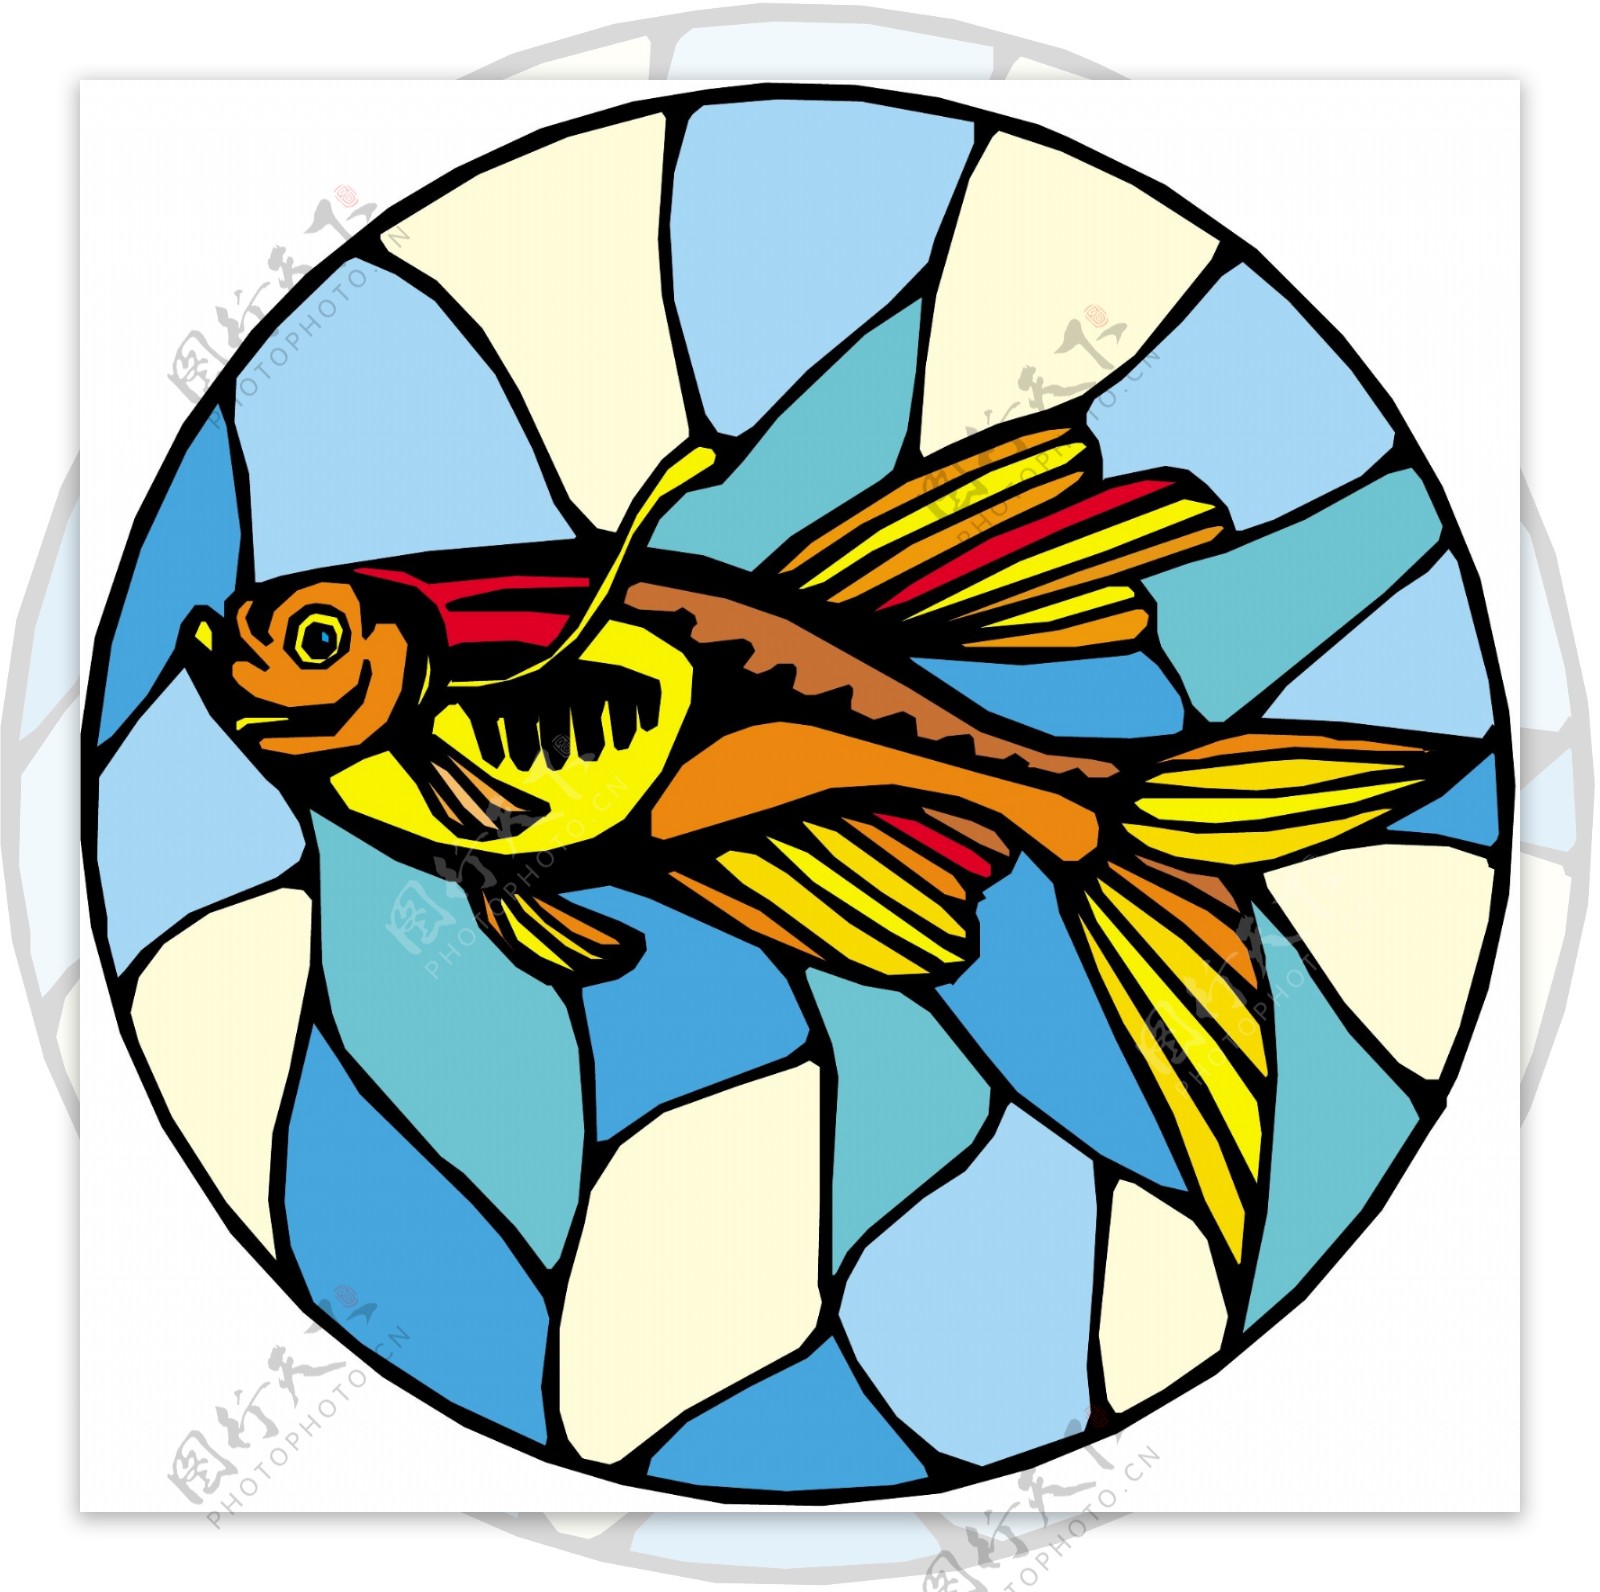 五彩小鱼水生动物矢量素材EPS格式0681